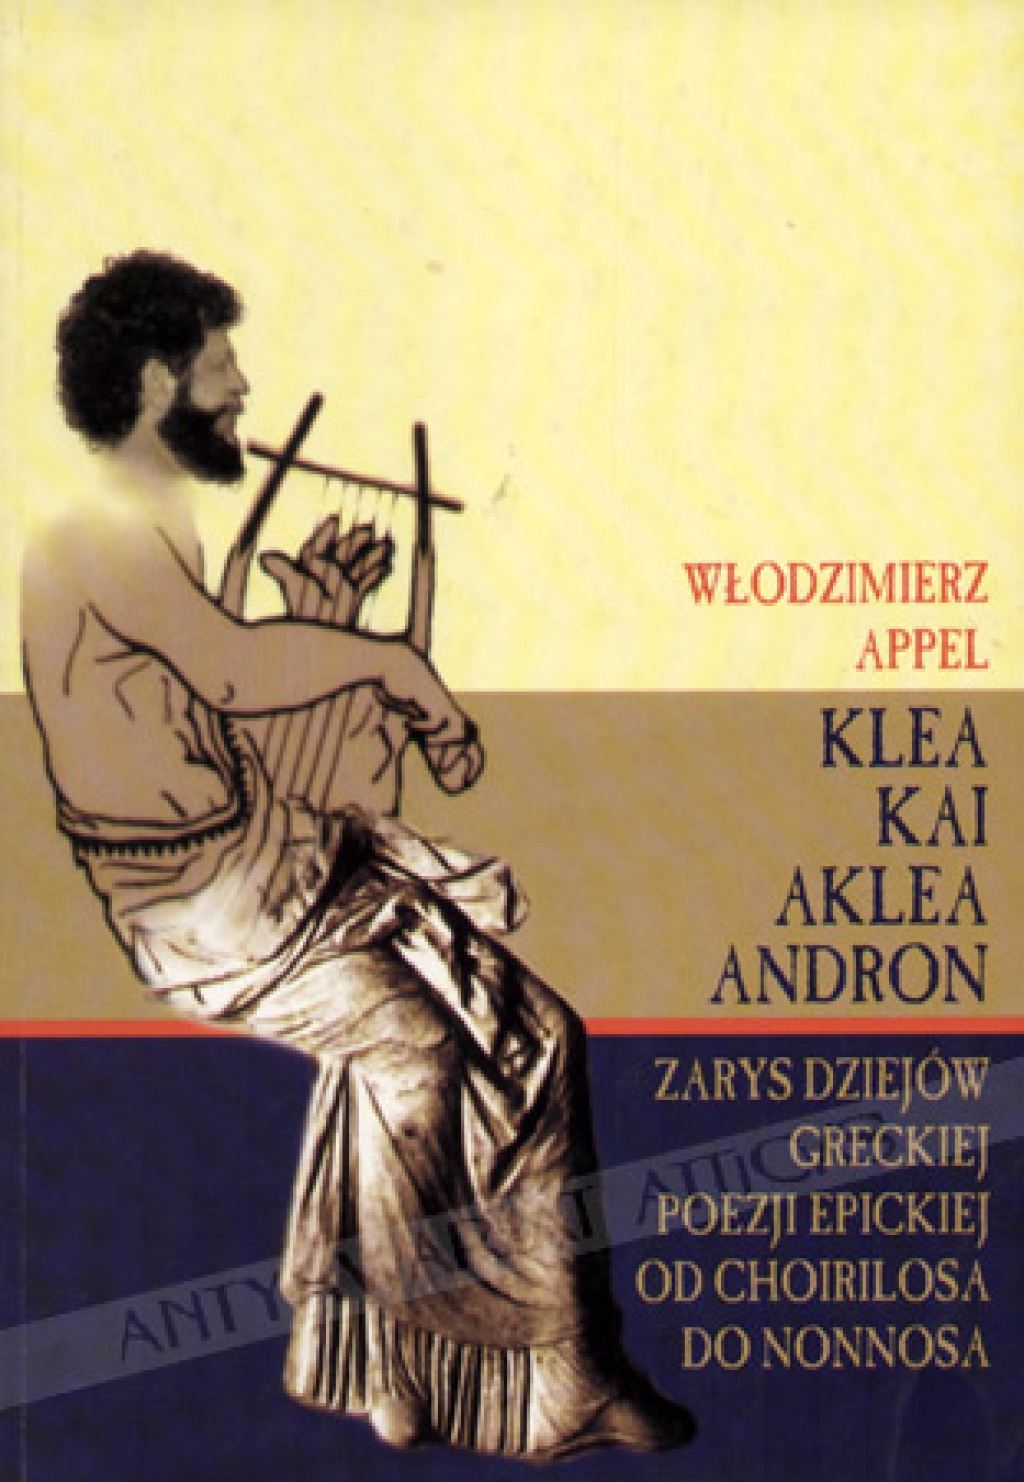 Klea Kai Aklea Andron. Zarys dziejów greckiej poezji epickiej od Choirilosa do Nonnosa